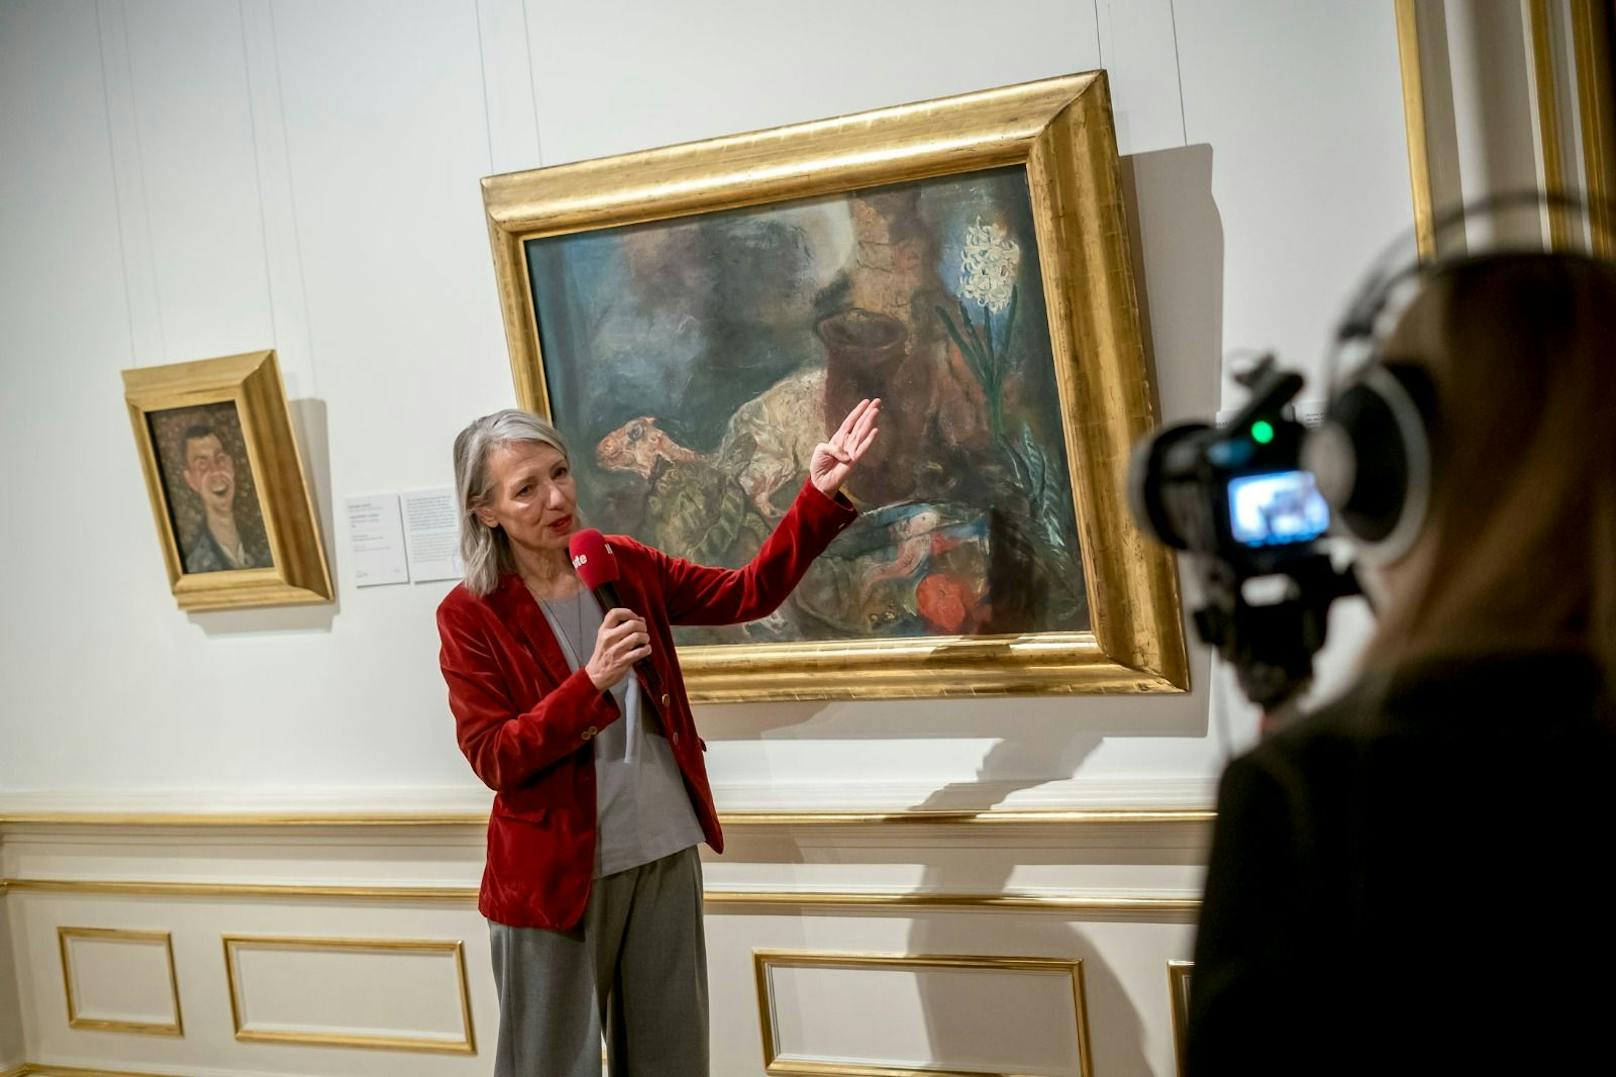 Direktorin Stella Rollig zeigt die bedeutendsten Gemälde des Oberen Belvedere in Wien. Hier zu sehen: Oskar Kokoschka und seinem "Stillleben mit Hammel und Hyazinthe".